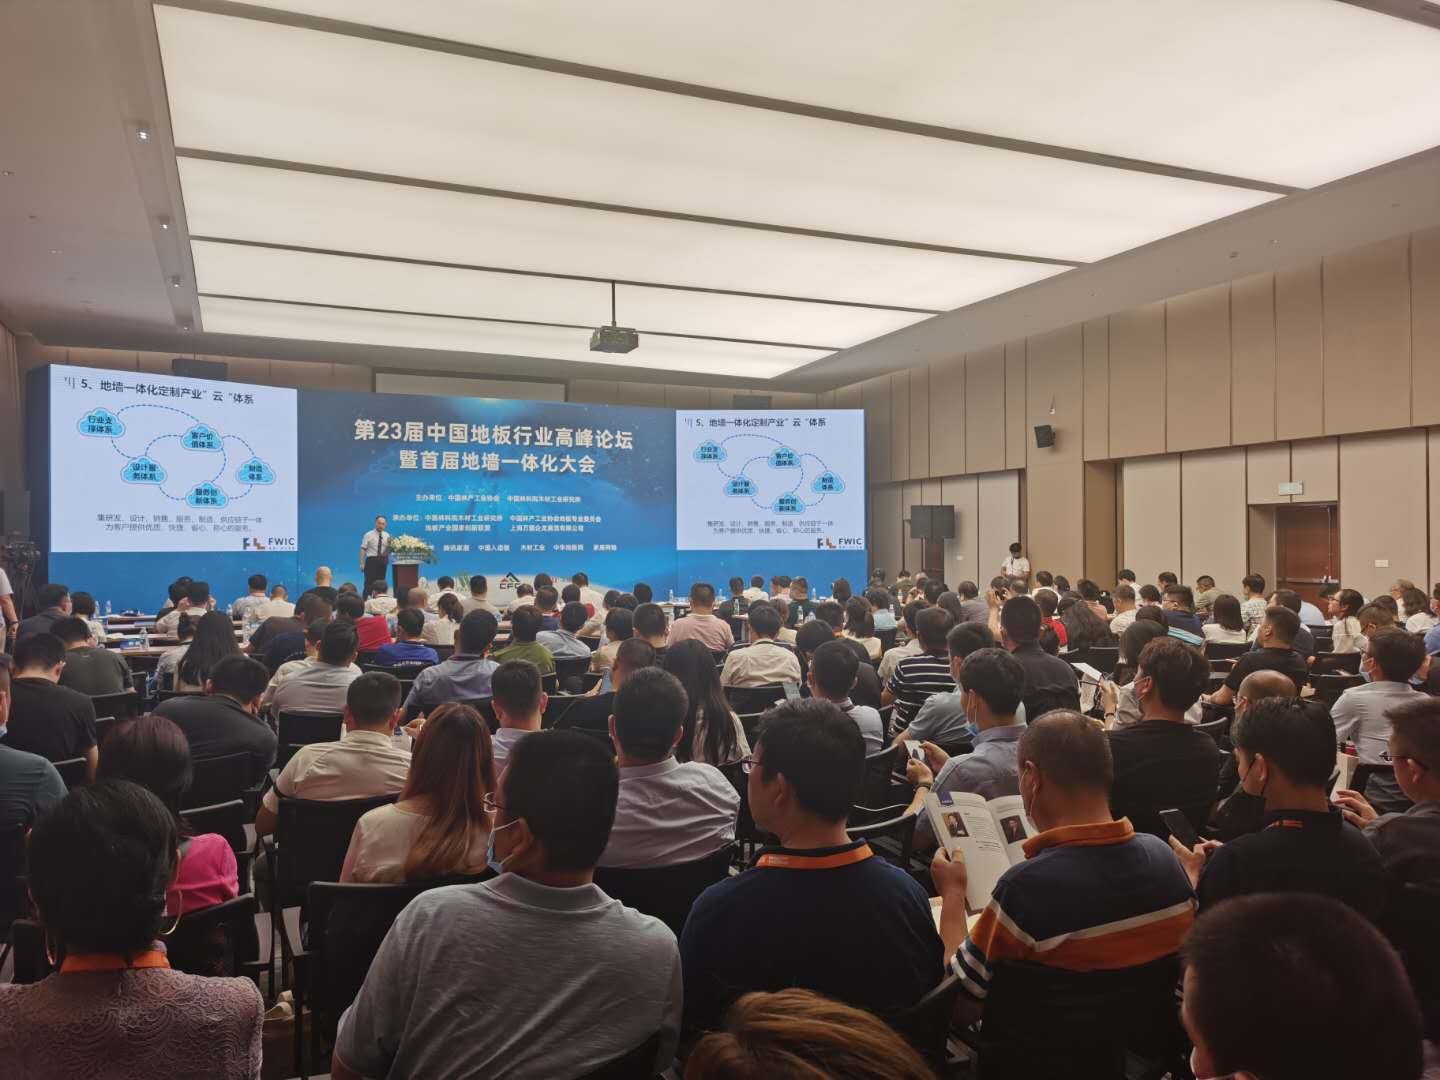 圣象董事长陈建军作主题发言并获产业创新第23届中国地板行业高峰论坛